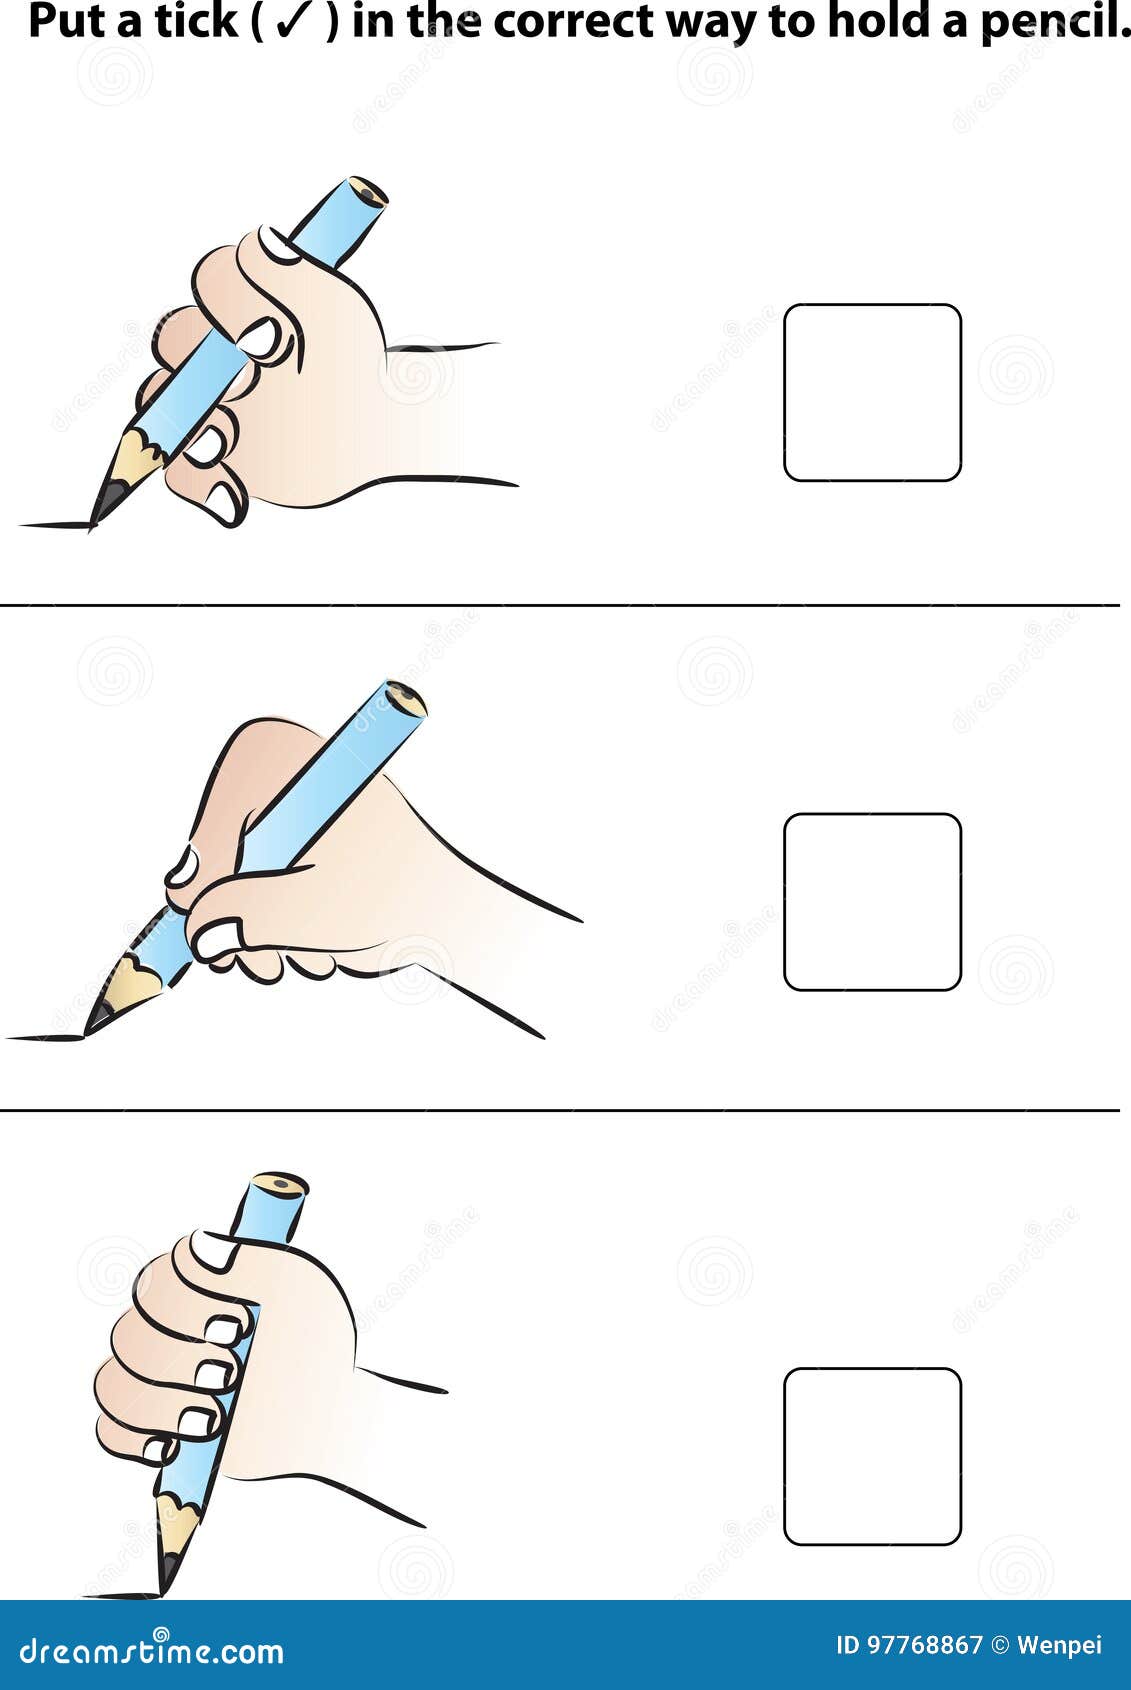 Карандашек или карандашик как. Правильно держать карандаш. Неправильно держит карандаш. Правильно держим карандаш картинка для детей. Как правильно держать карандаш ребенку.